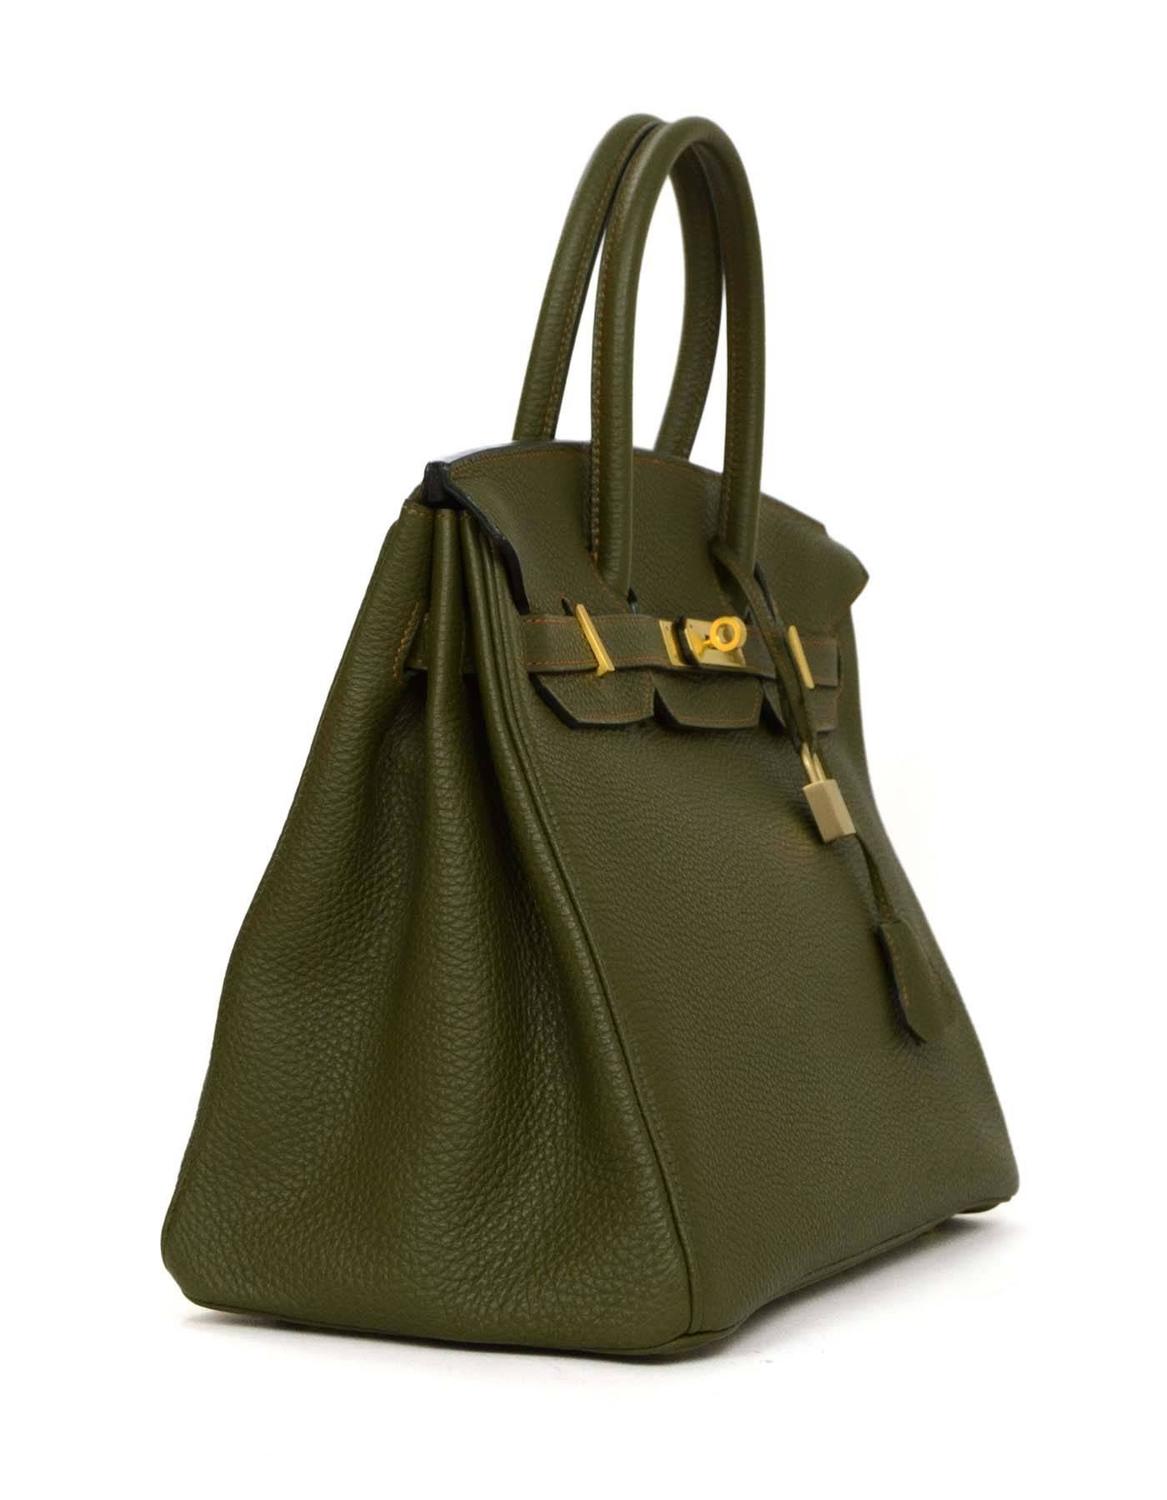 Hermes Olive Green Togo Leather Special Order 35cm Birkin Bag GHW at